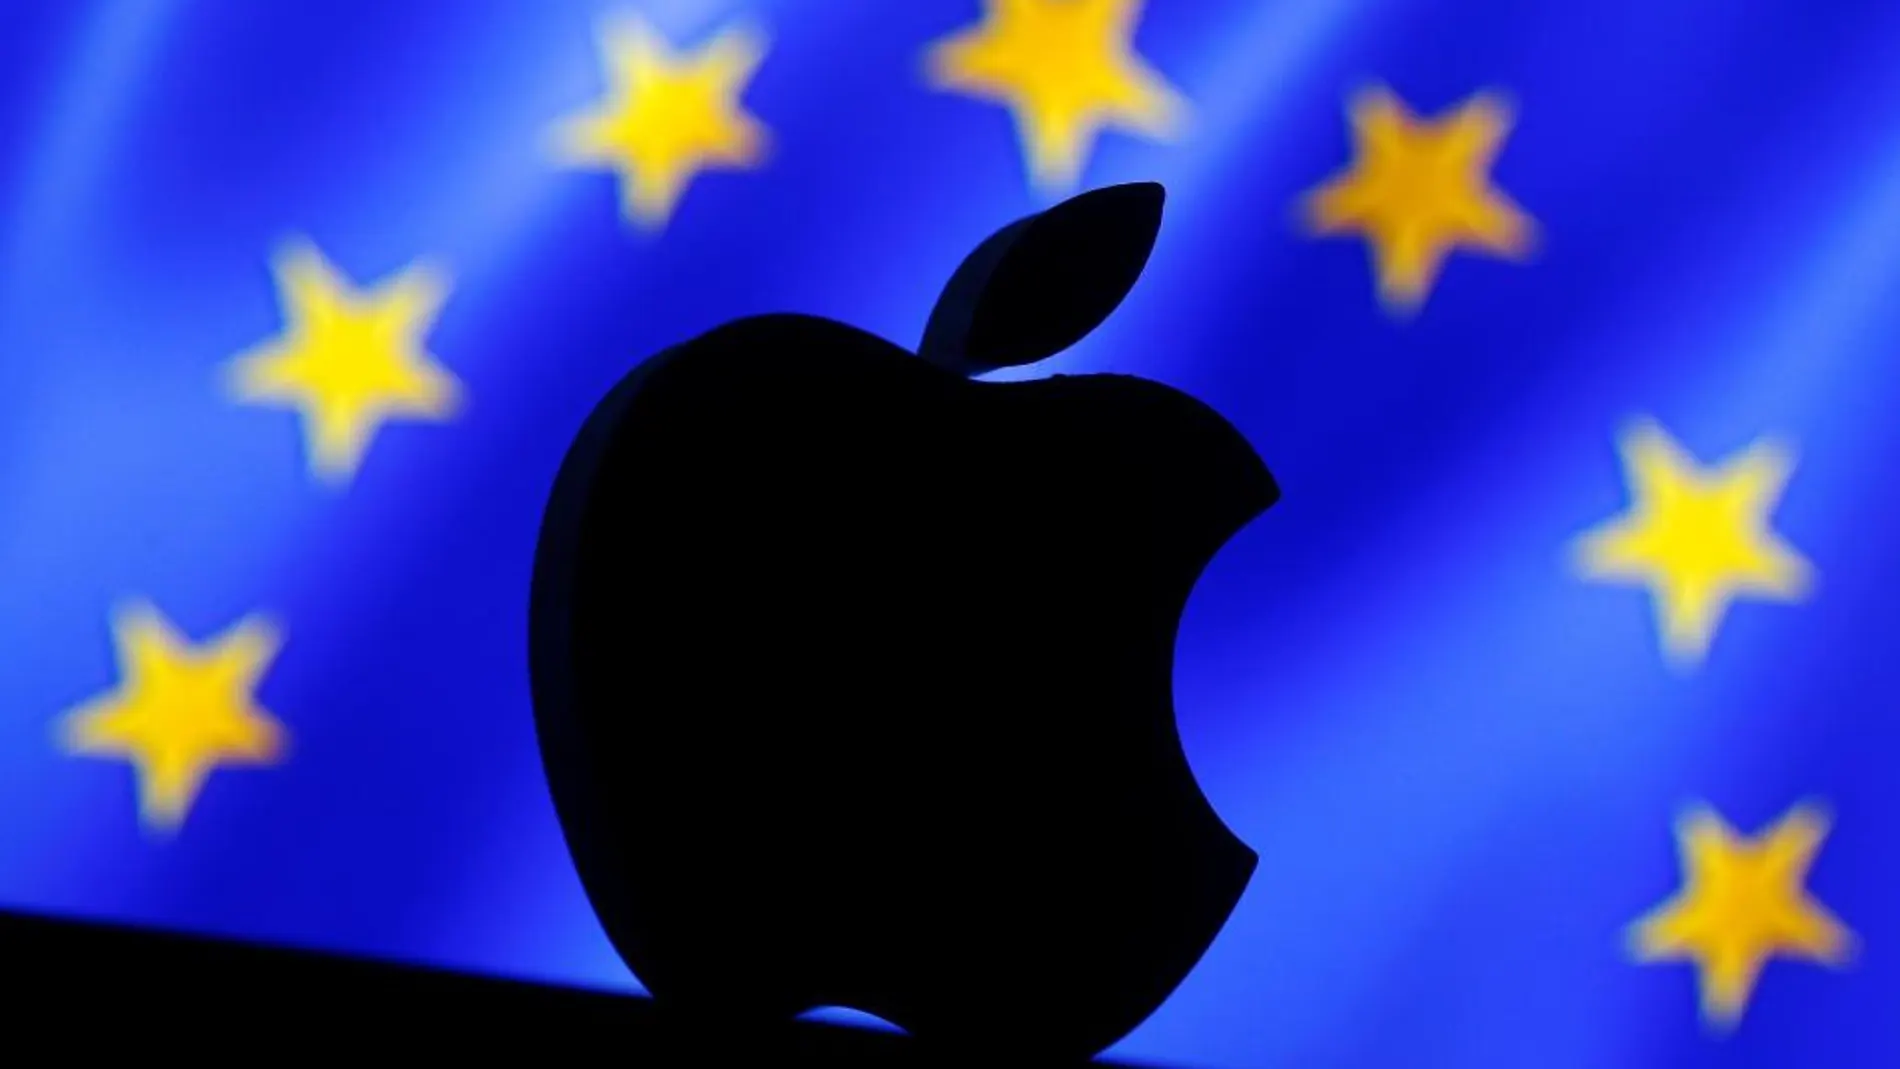 La Comisión Europea exige a Irlanda la recuperación de los impuestos impagados por parte de Apple.